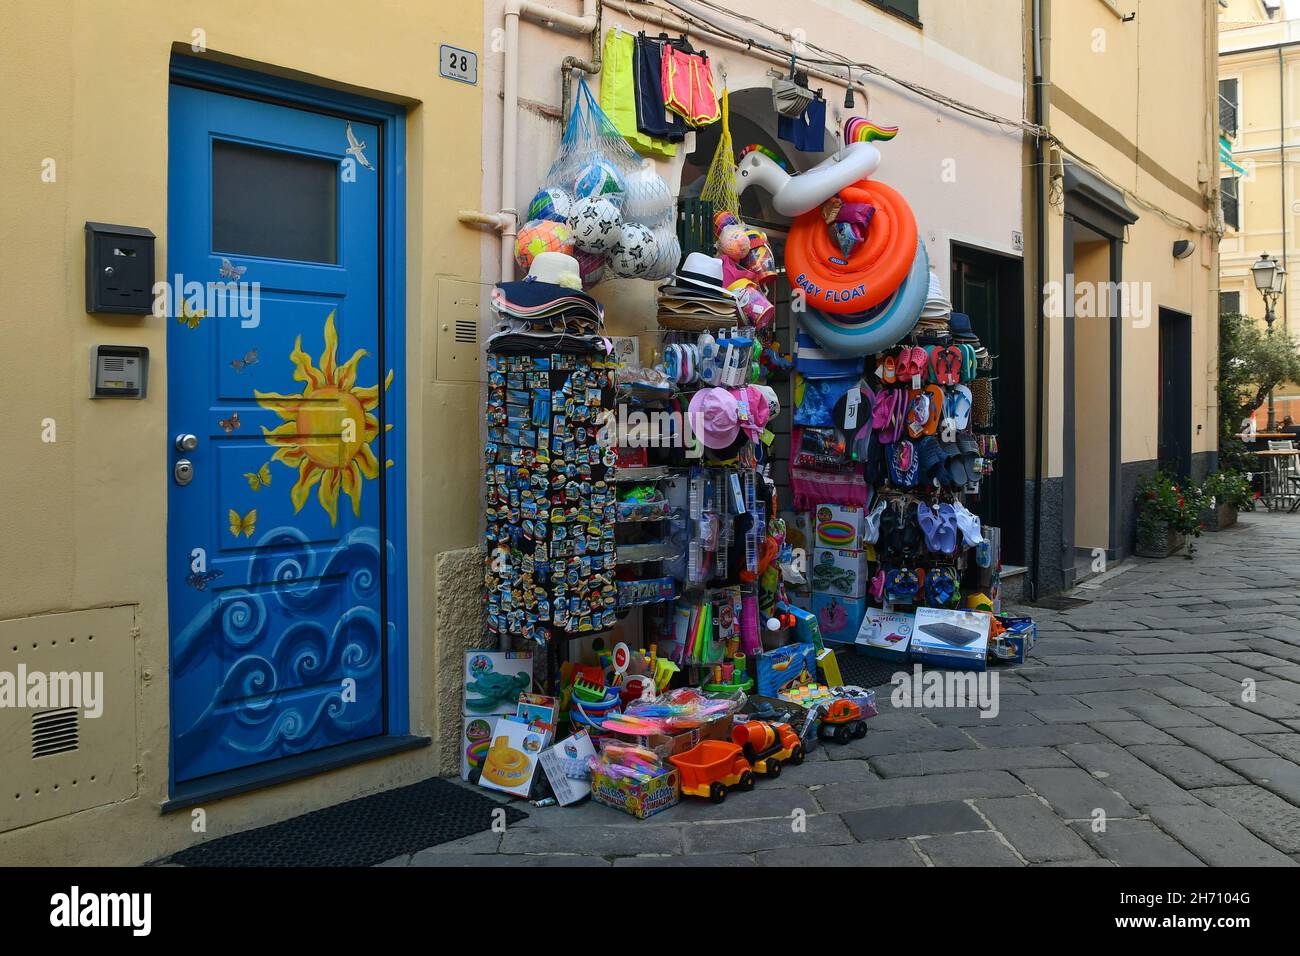 Aperçu d'une allée dans la vieille ville avec une boutique touristique vendant des produits à vol d'eau et des jouets de plage en été, Alassio, Savona, Ligurie, Italie Banque D'Images